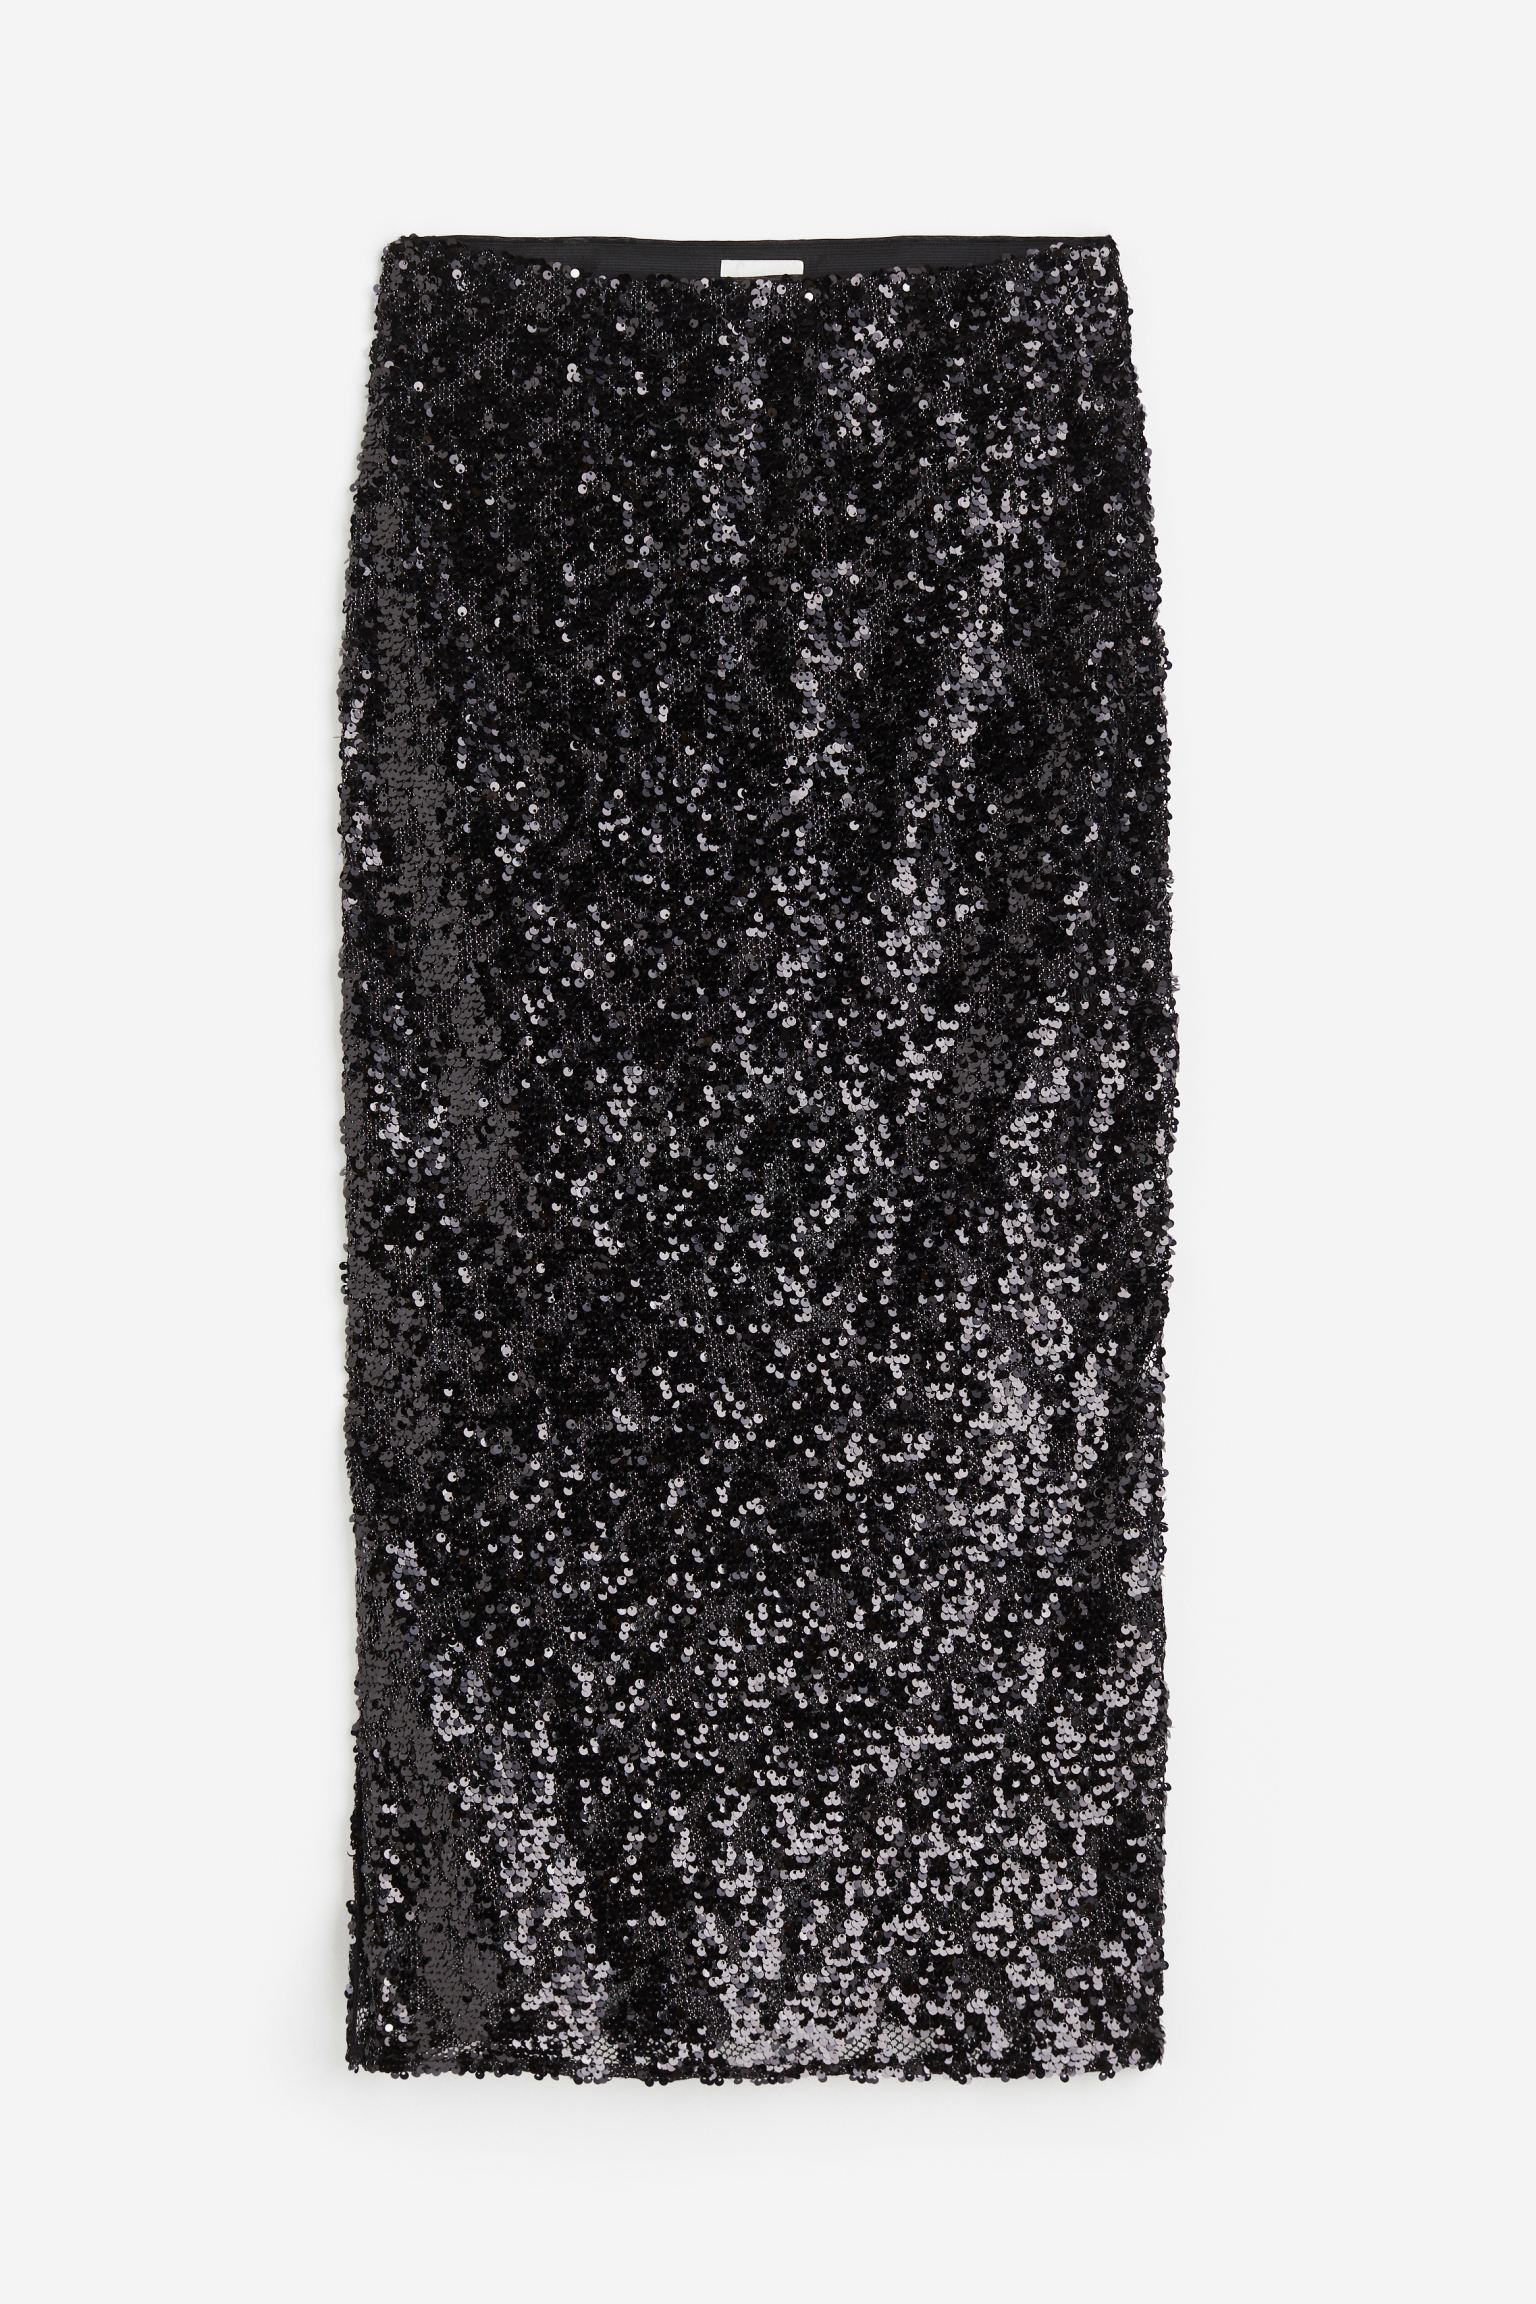 Юбка H&M Sequined, черный летняя сетчатая юбка трапеция с цветочным кружевом и поясом на резинке плиссированная юбка до середины икры 2221024496